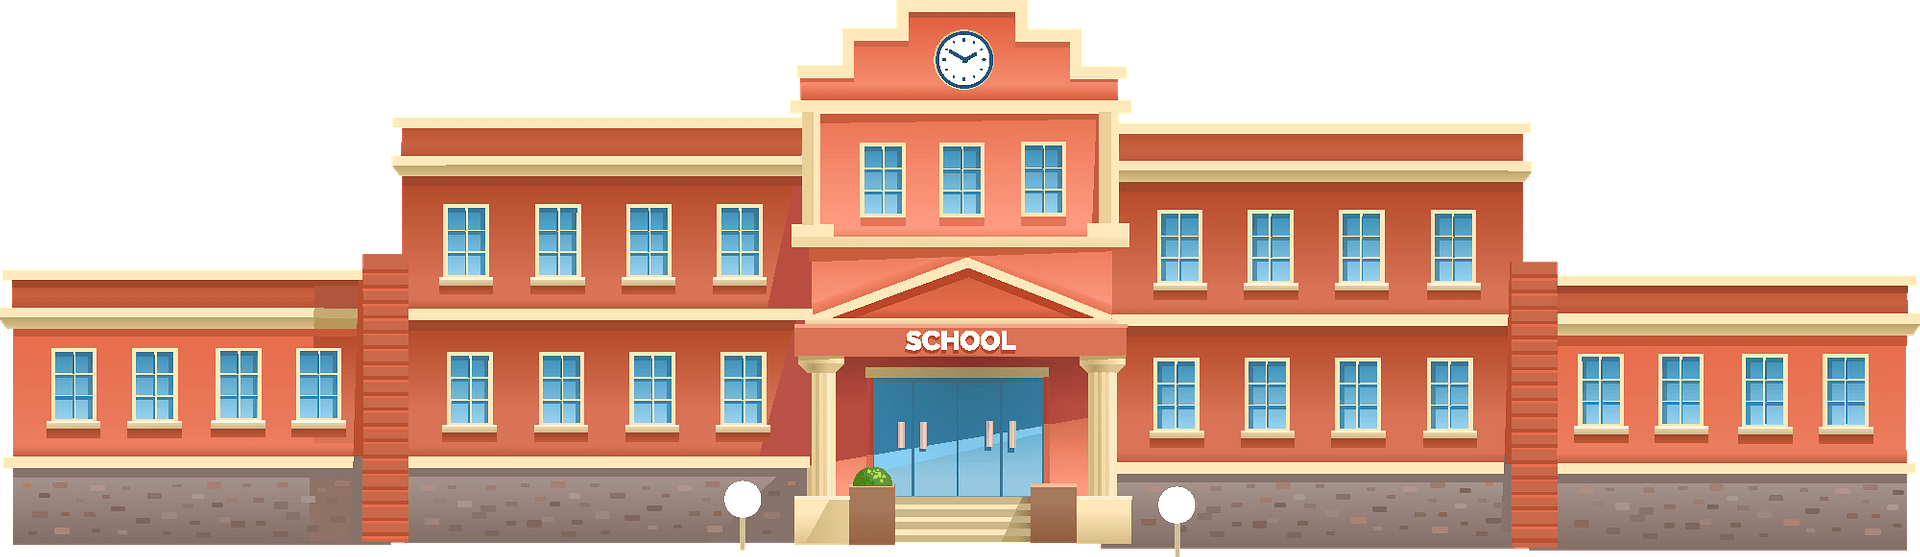 SCHOOLS AND HIGH SHCOOLS OF VOHRA COMMUNITY